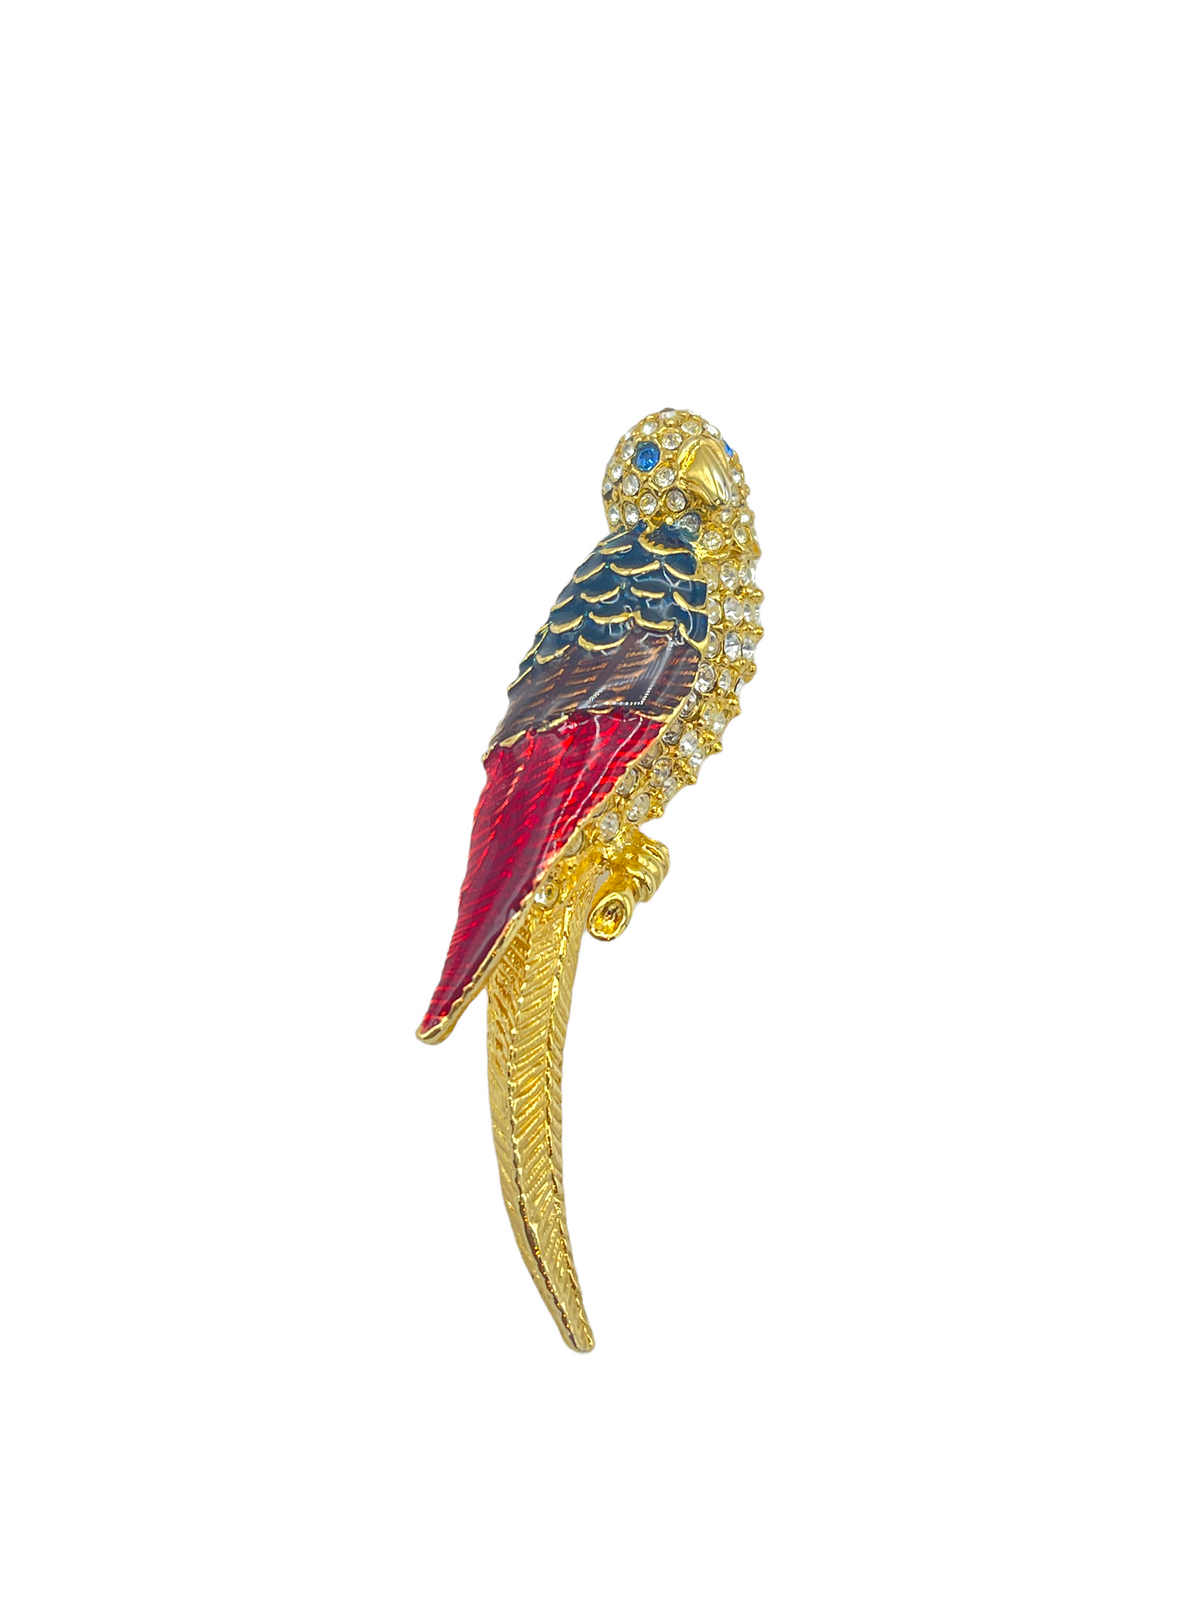 Giorgio Gold Enamel Parrot Bird Vintage Designer Brooch